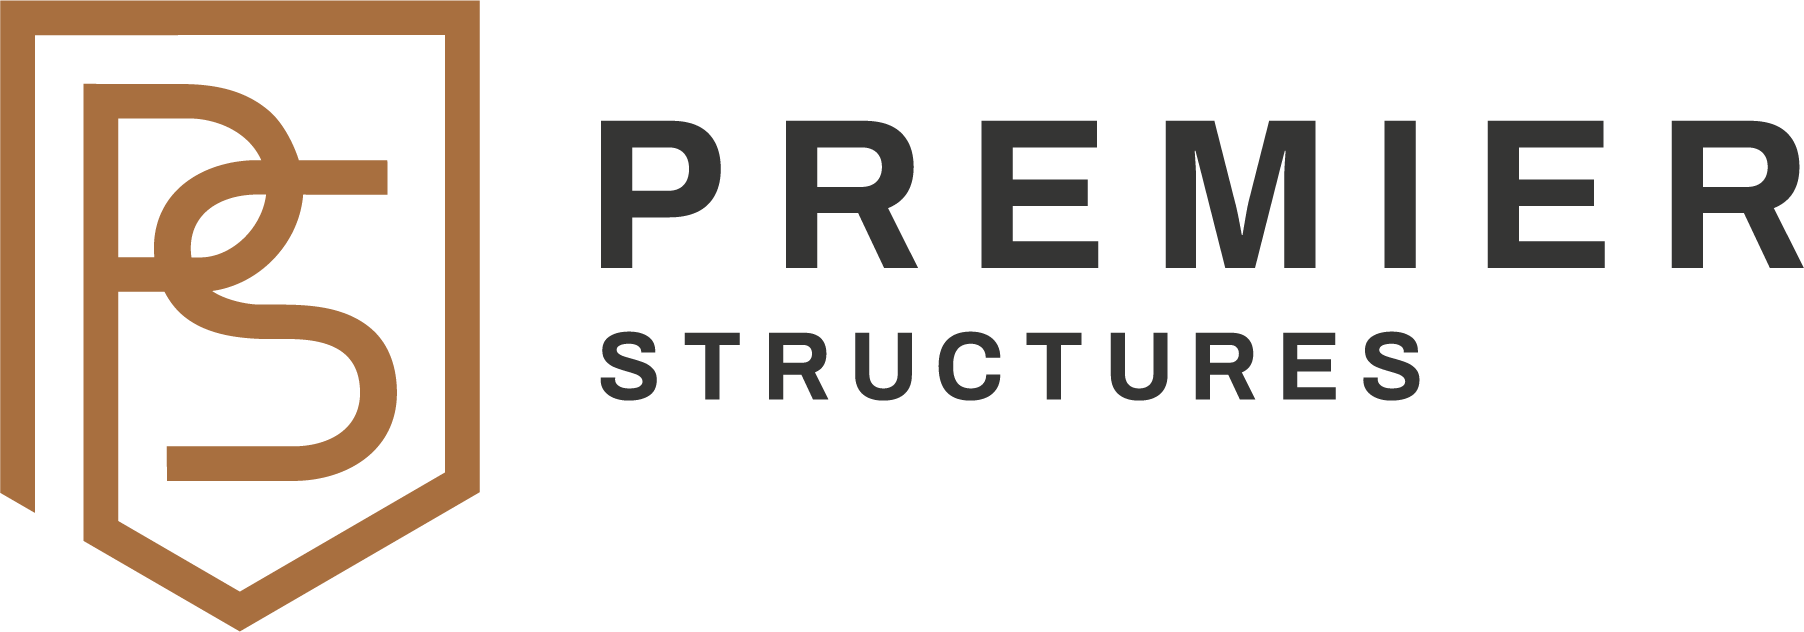 Premier Structures: Home Builder | Richmond Area, VA